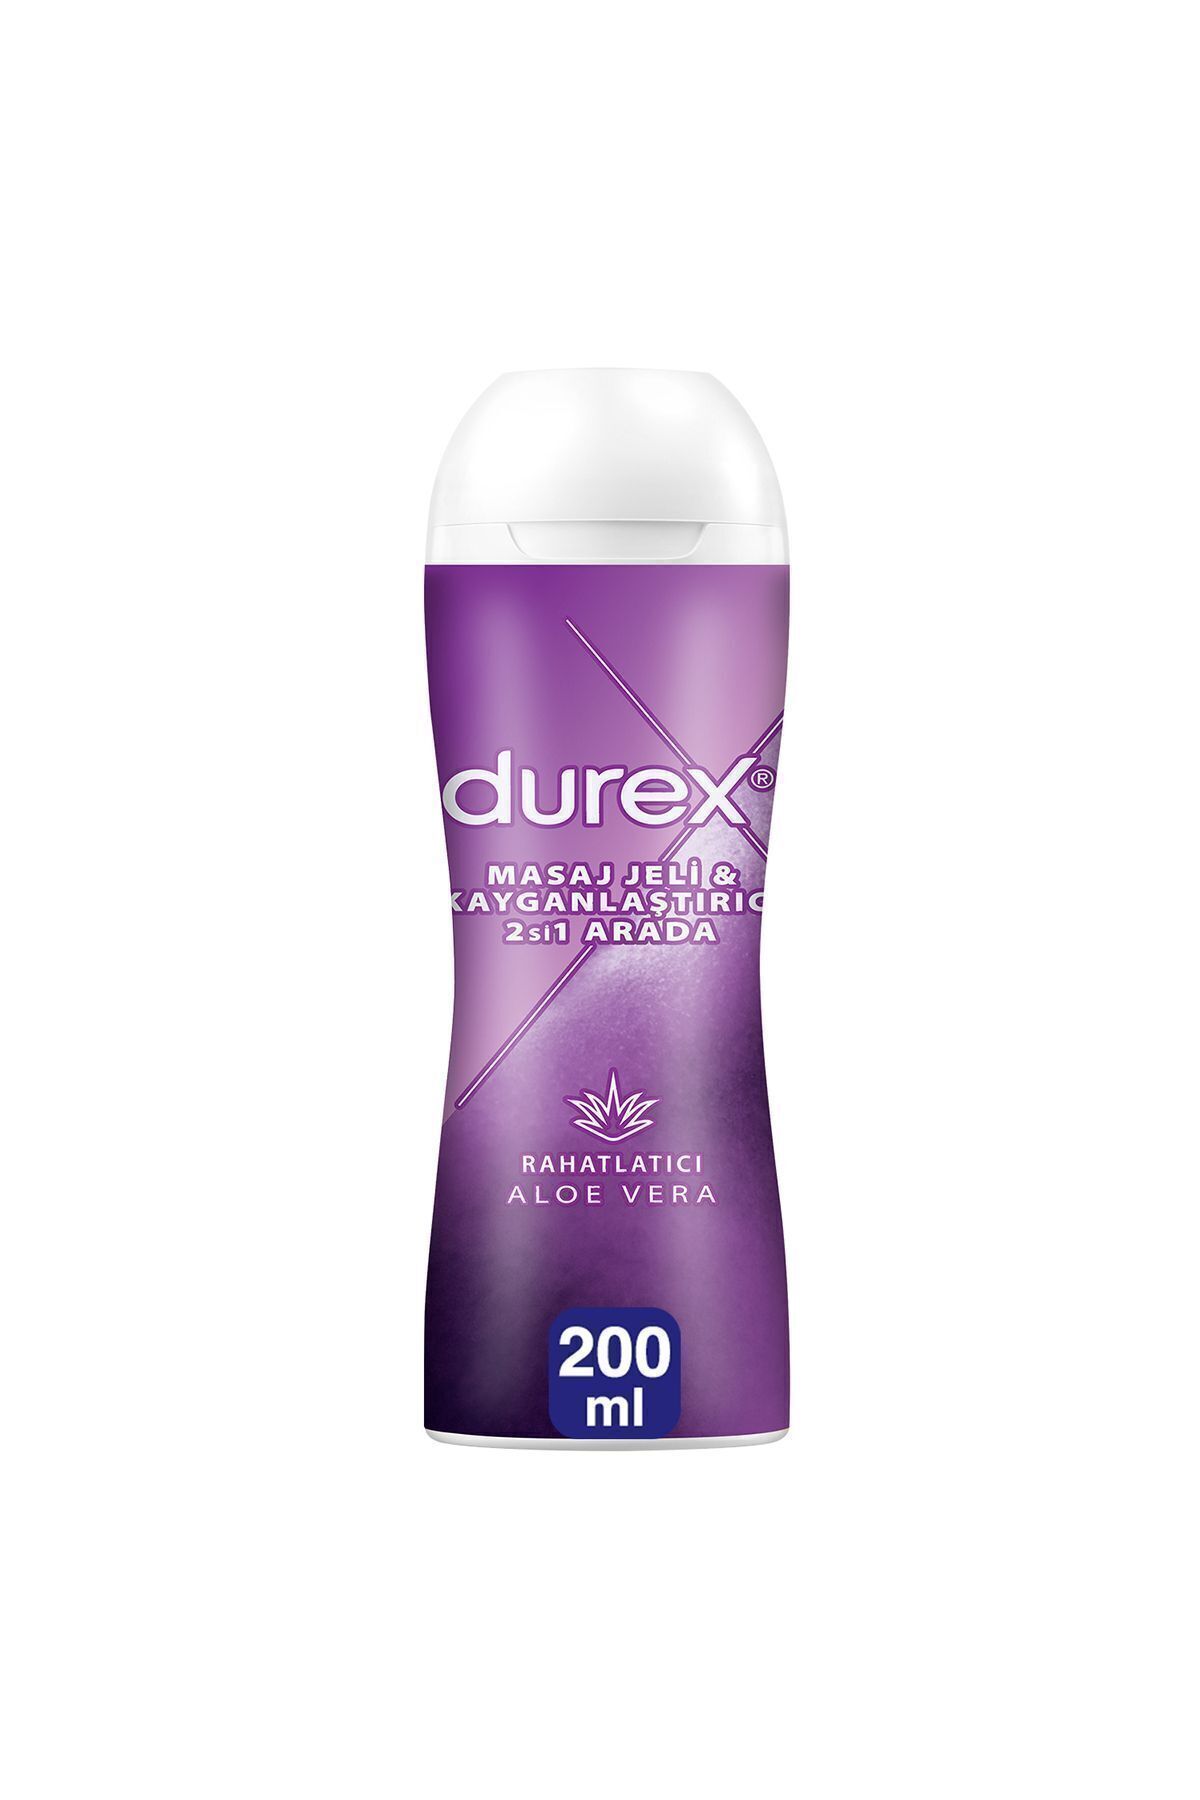 Durex Aloe Vera 2si 1 Arada Kayganlaştırıcı & Masaj Jeli 200ml